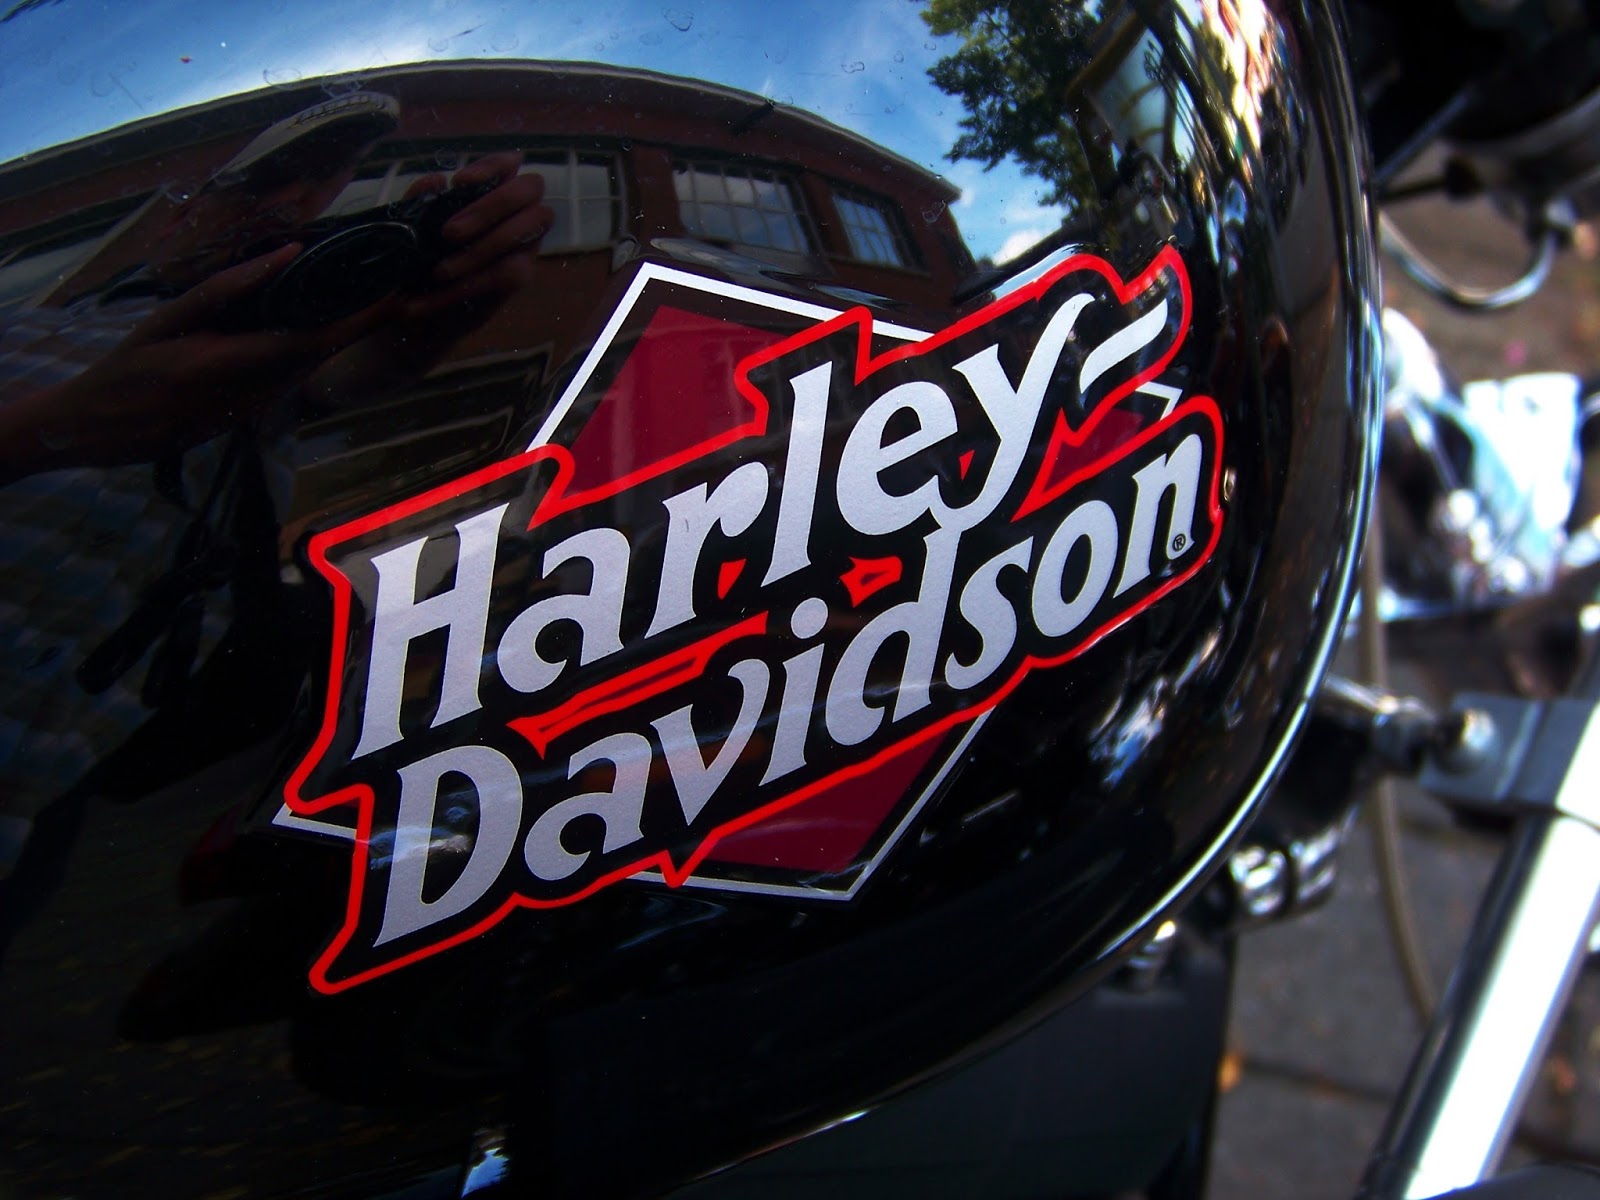  MOTORCYCLE  74 Harley  Davidson  tank logo s 